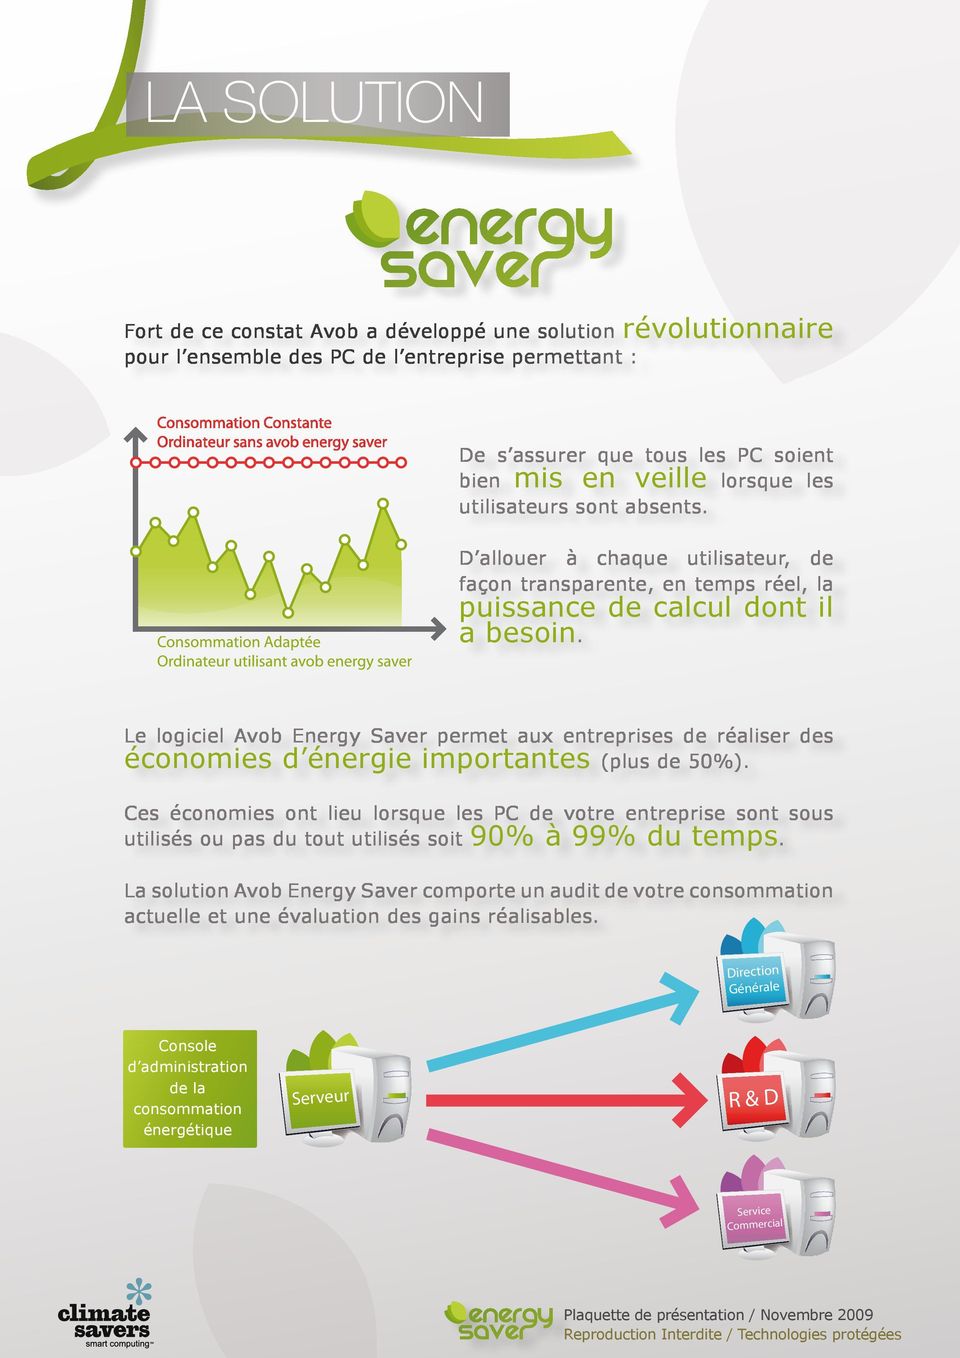 Le logiciel Avob Energy Saver permet aux entreprises de réaliser des économies d énergie importantes (plus de 50%).